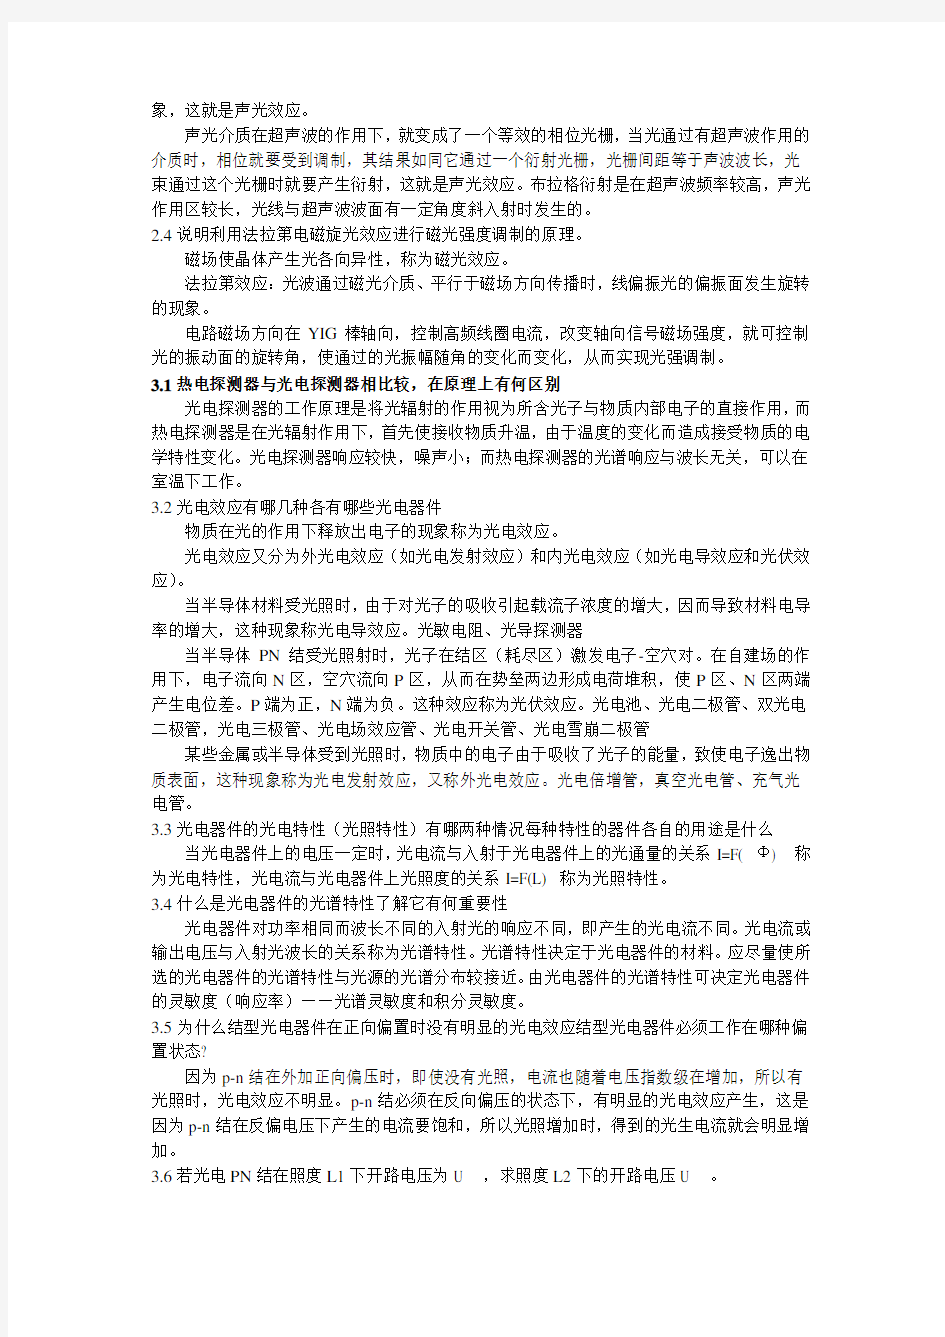 张永林 第二版《光电子技术》课后习题答案 